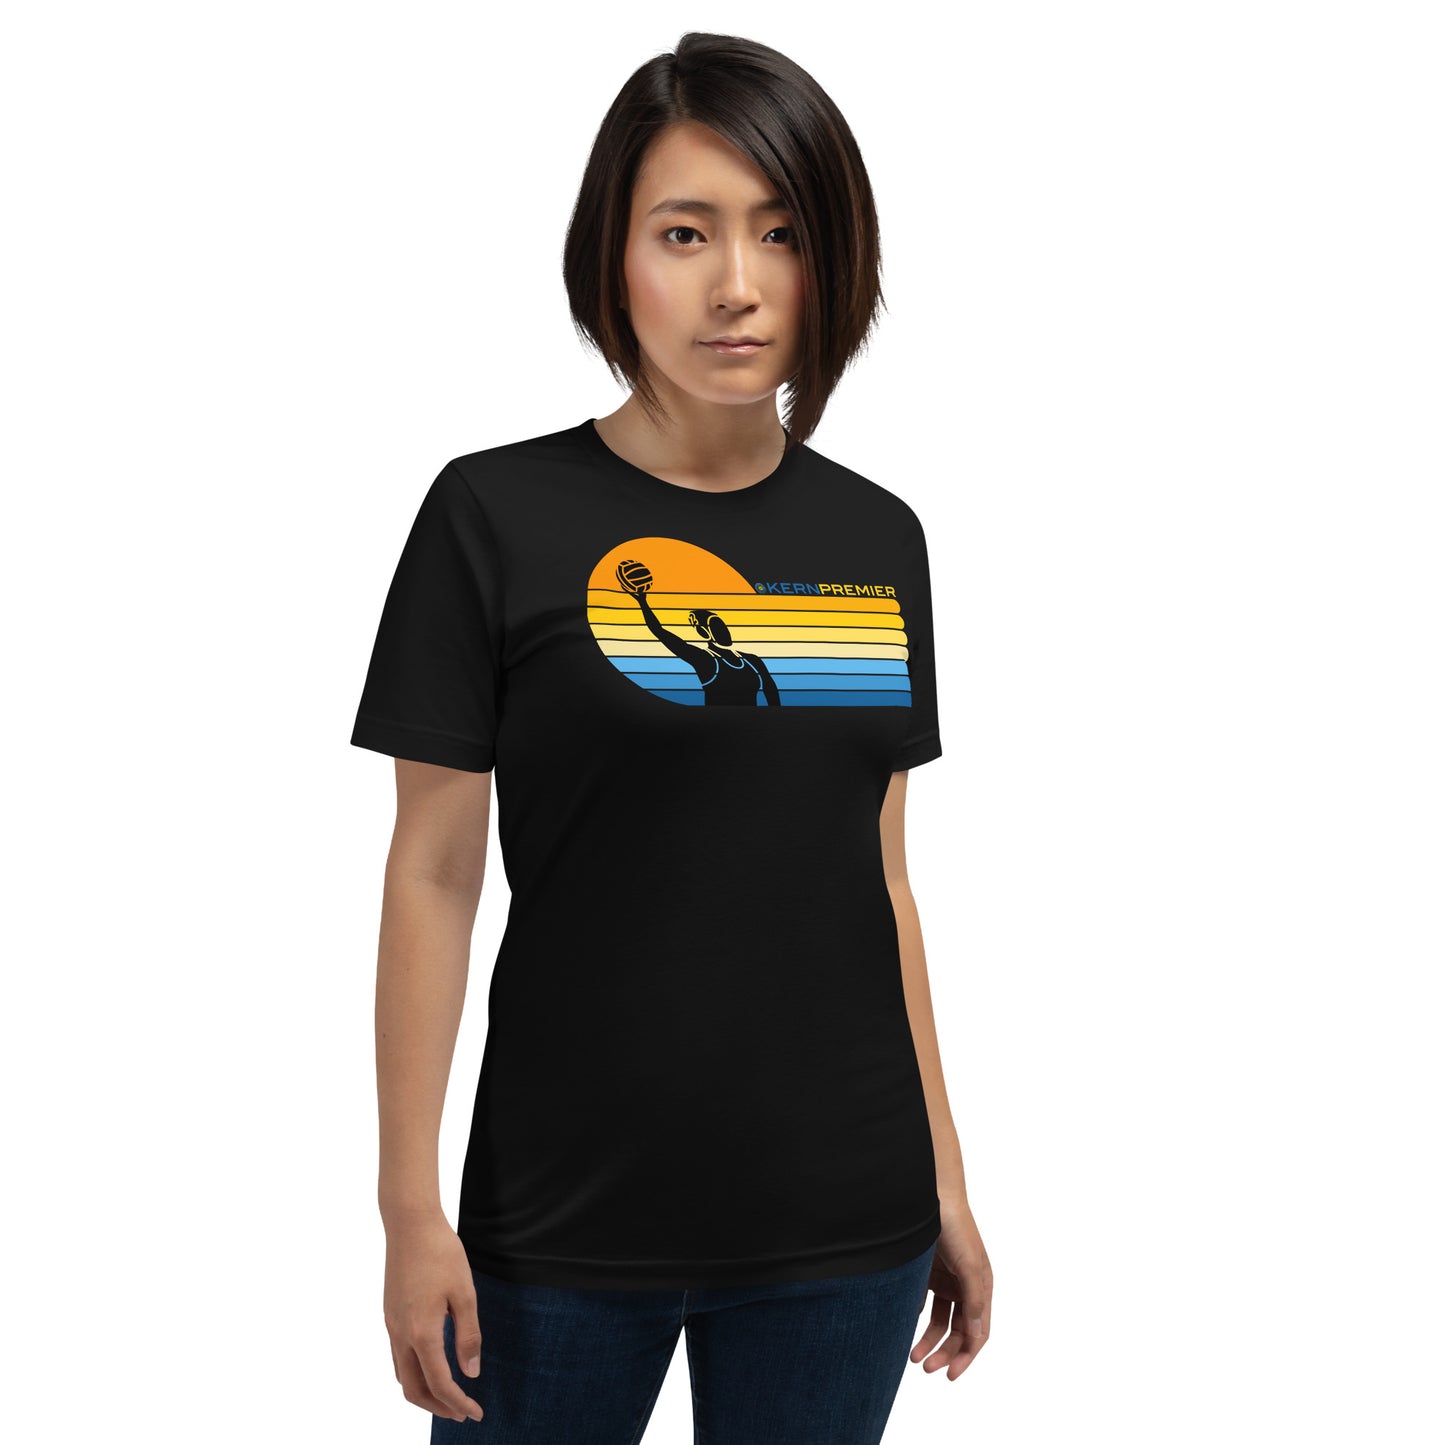 Kern Premier 7 color sunset left orientation female silhouette - Unisex Soft T-shirt - Bella Canvas 3001